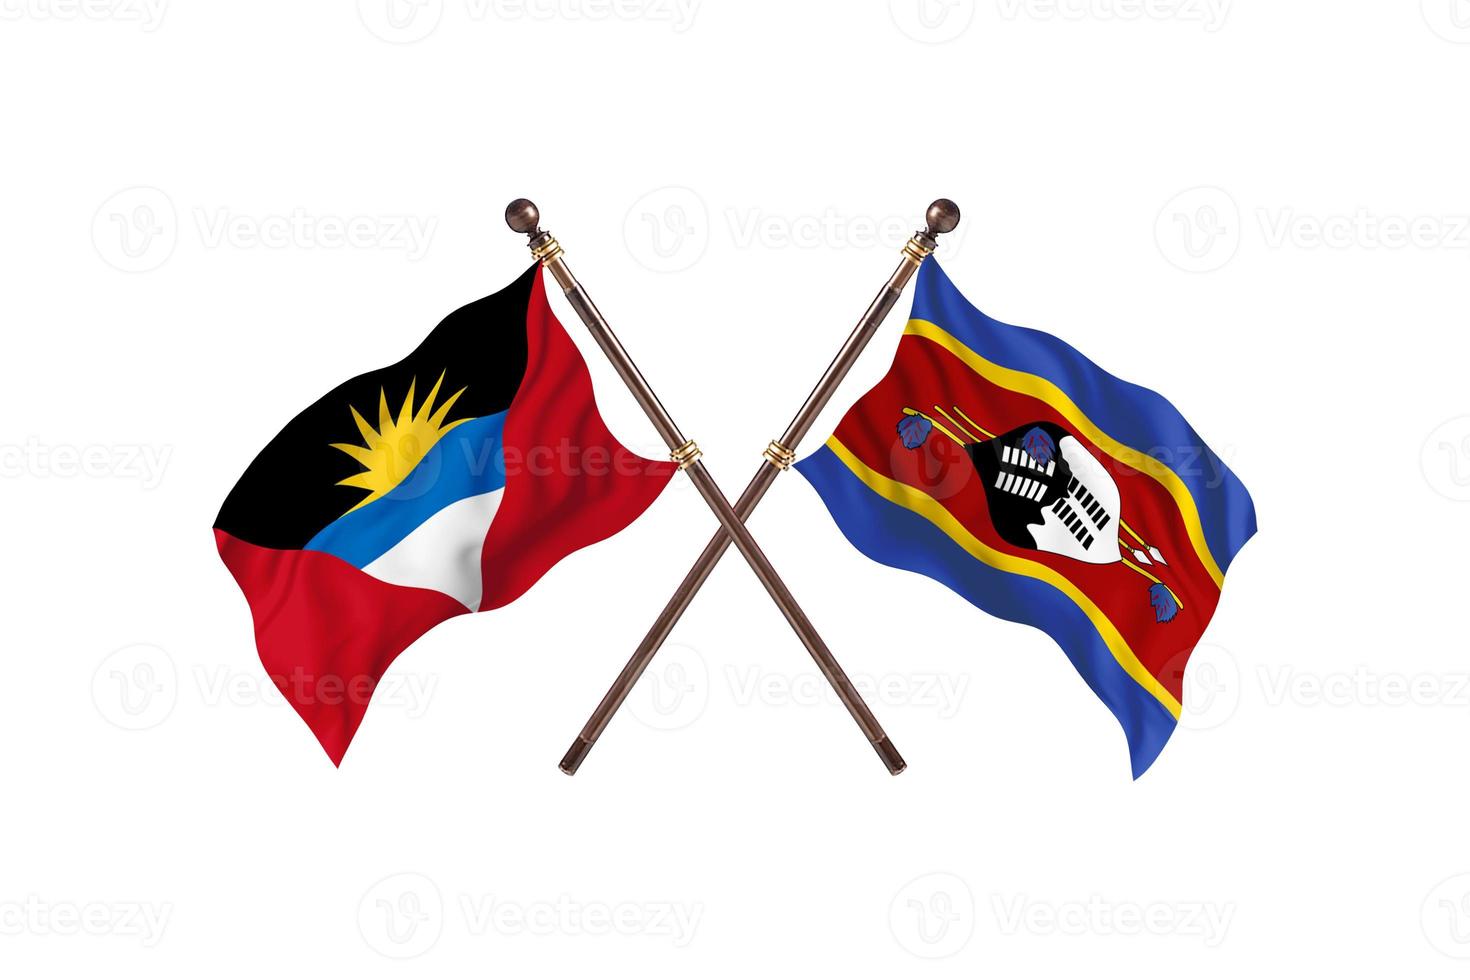 antígua e barbuda versus suazilândia duas bandeiras de país foto